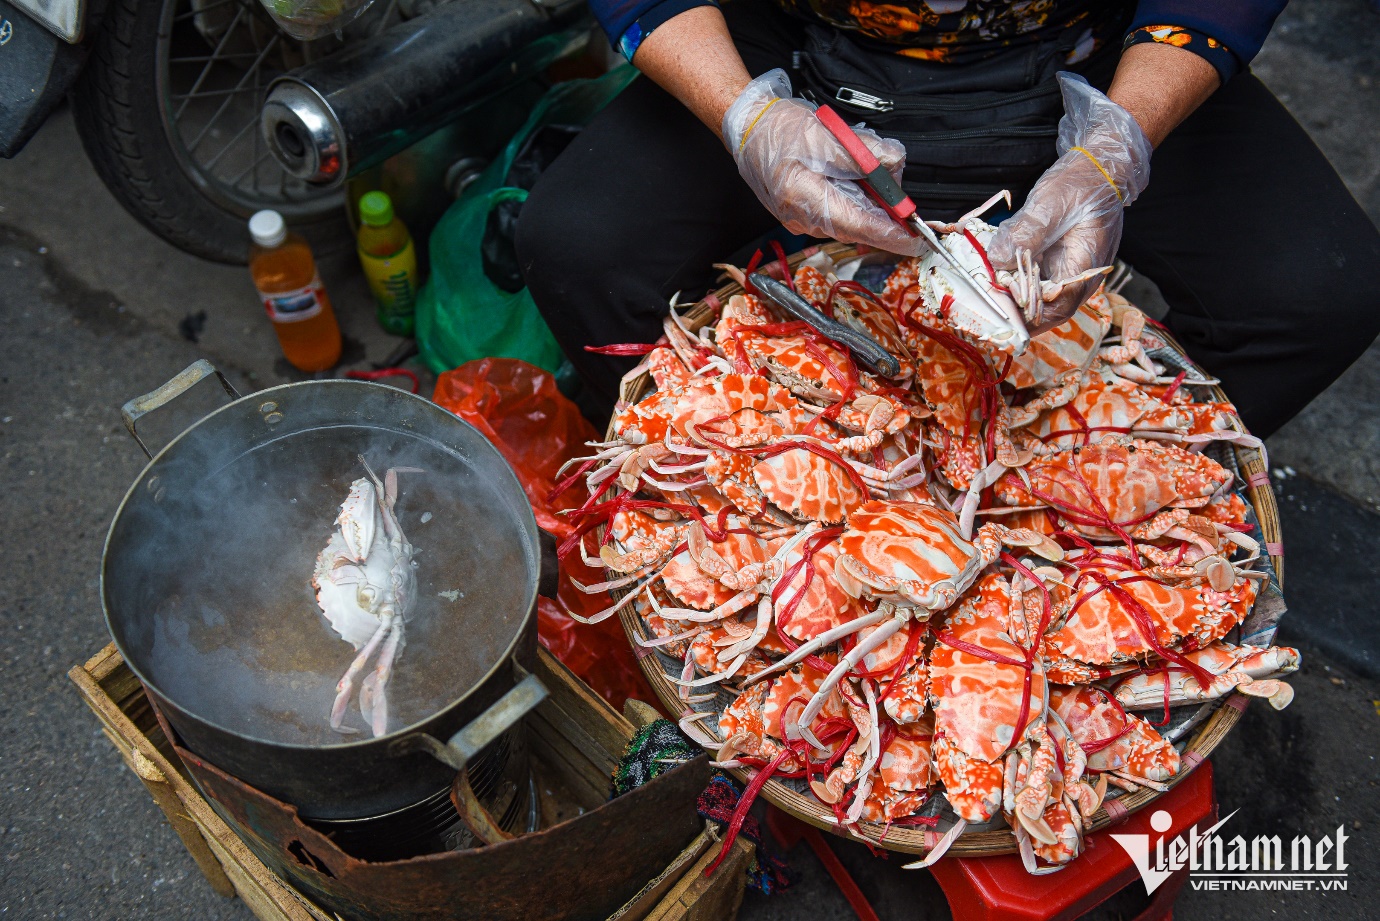 Mẹt ghẹ vỉa hè chợ Đồng Xuân của cụ bà U70, ngày thu đến 20 triệu đồng - 6